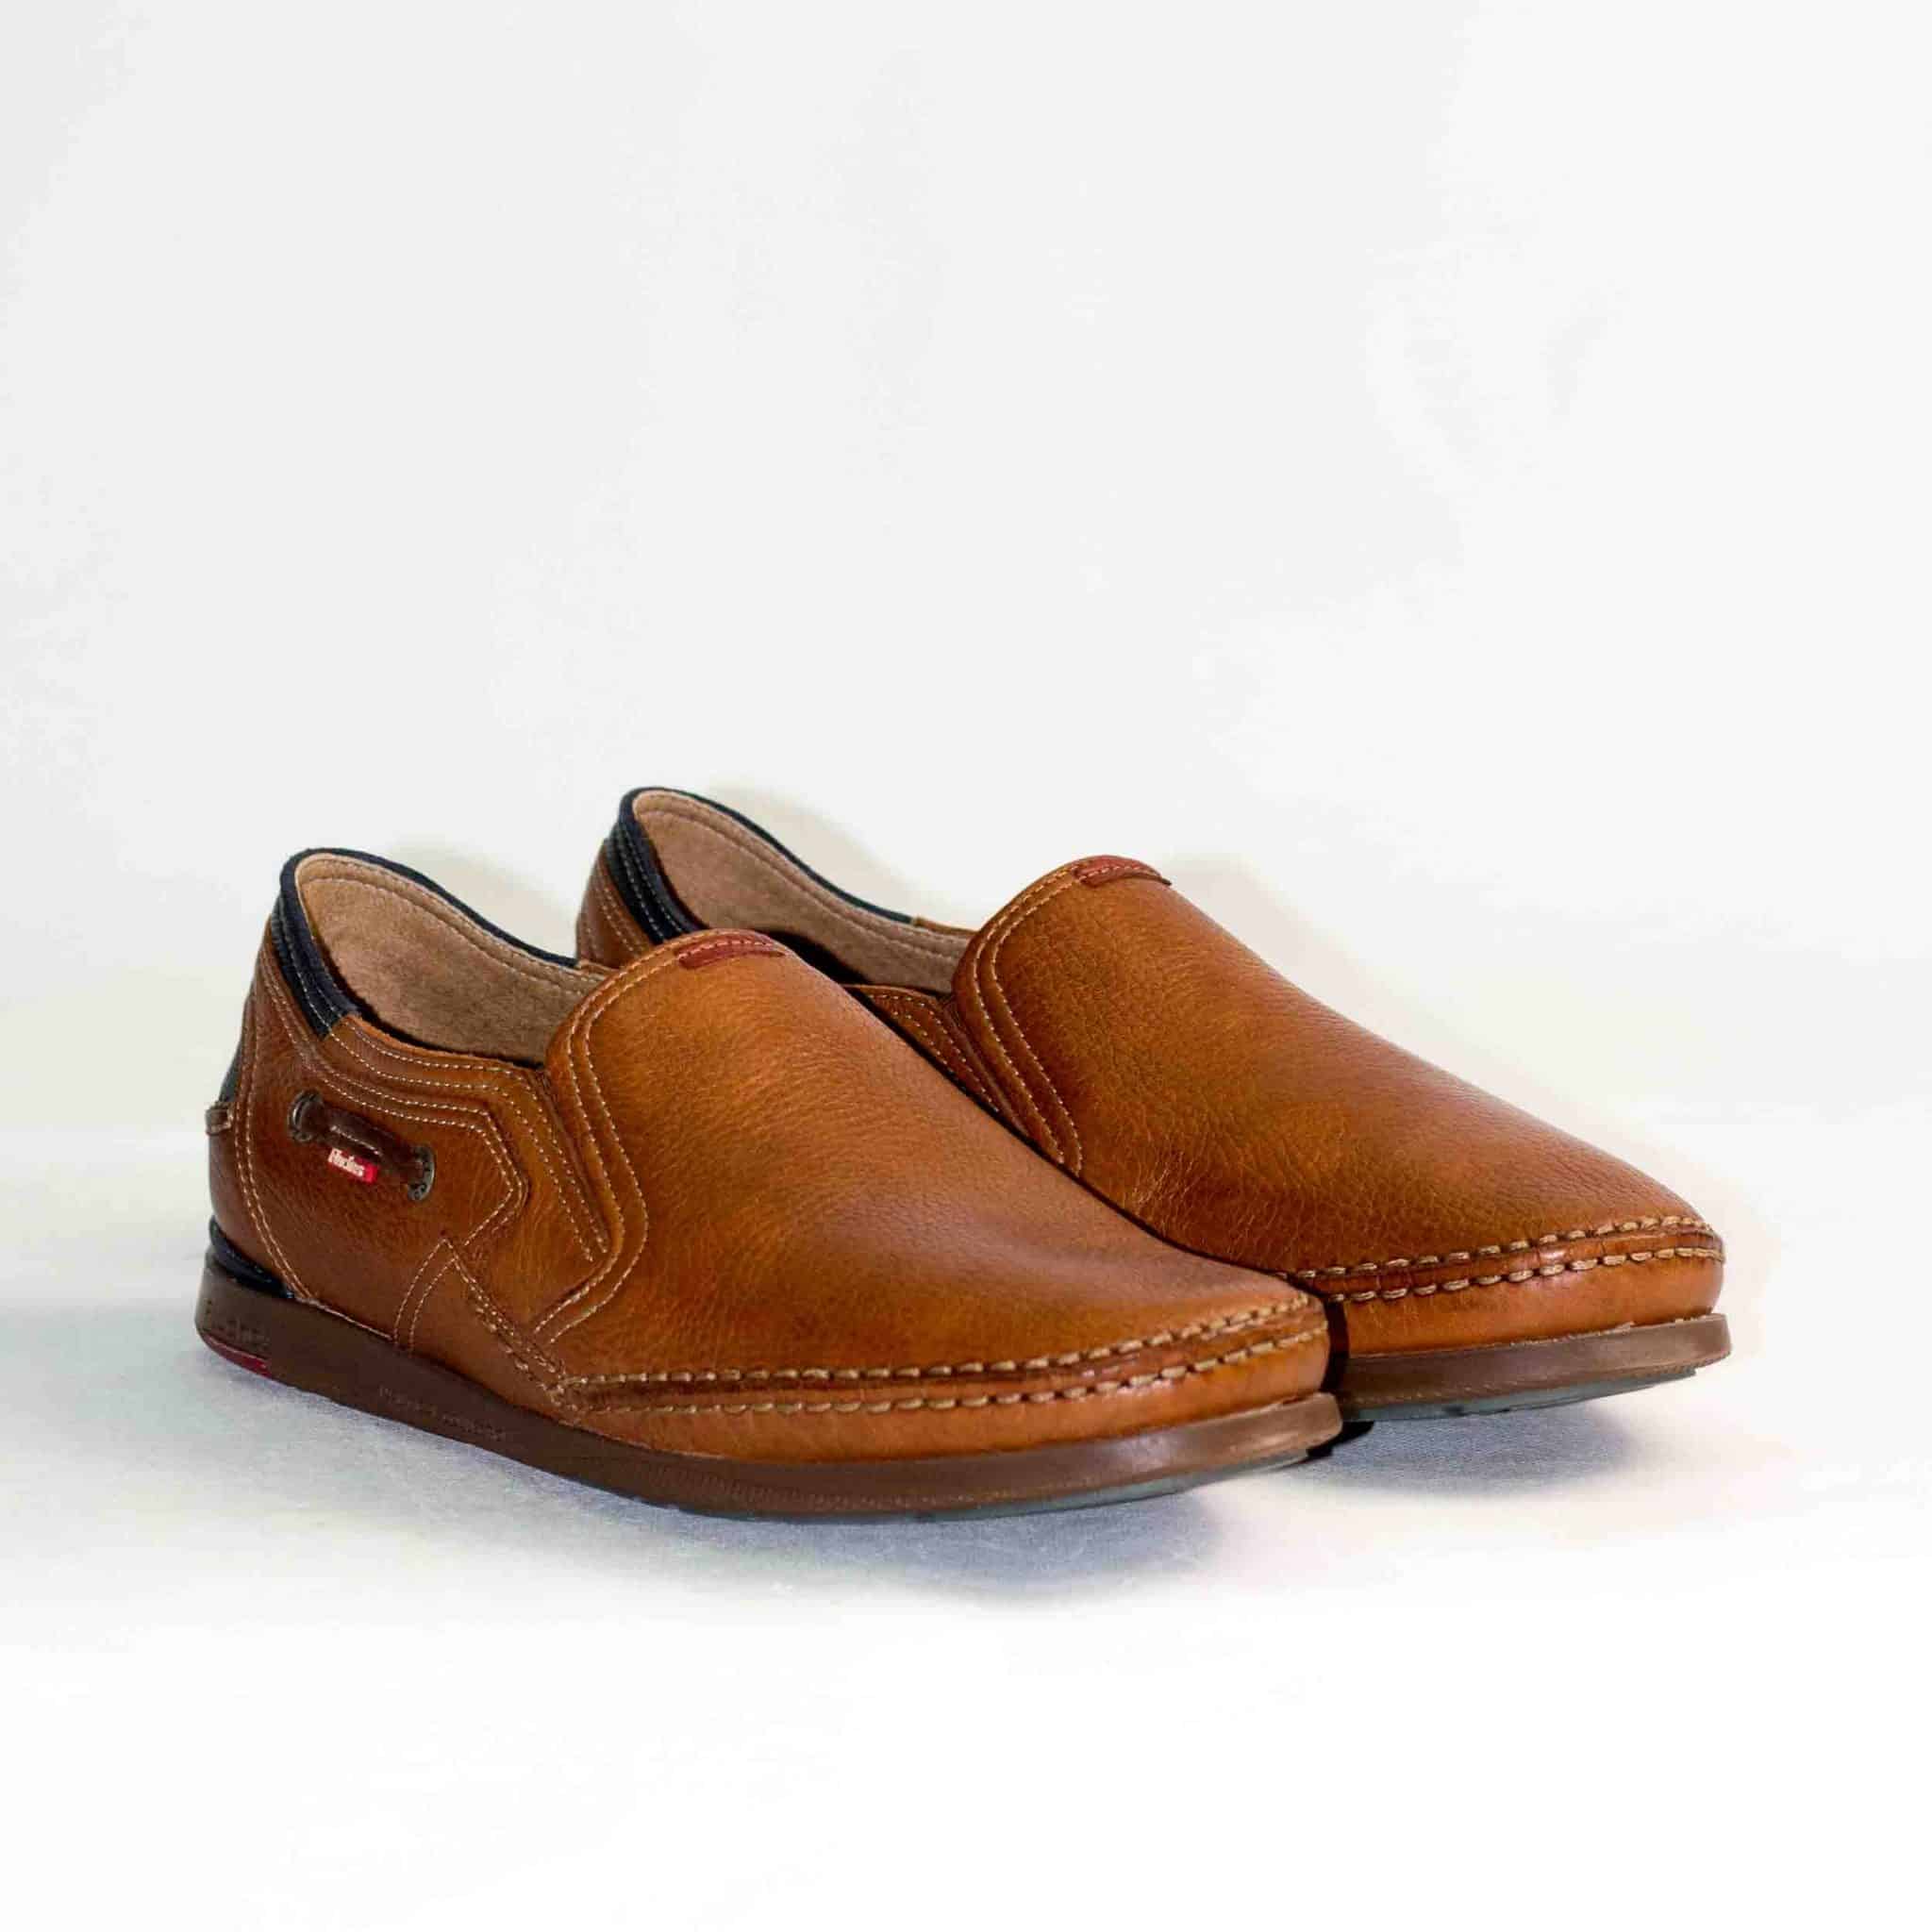 Sneakers hombre - Oferta de zapatillas de vestir casual para comprar online